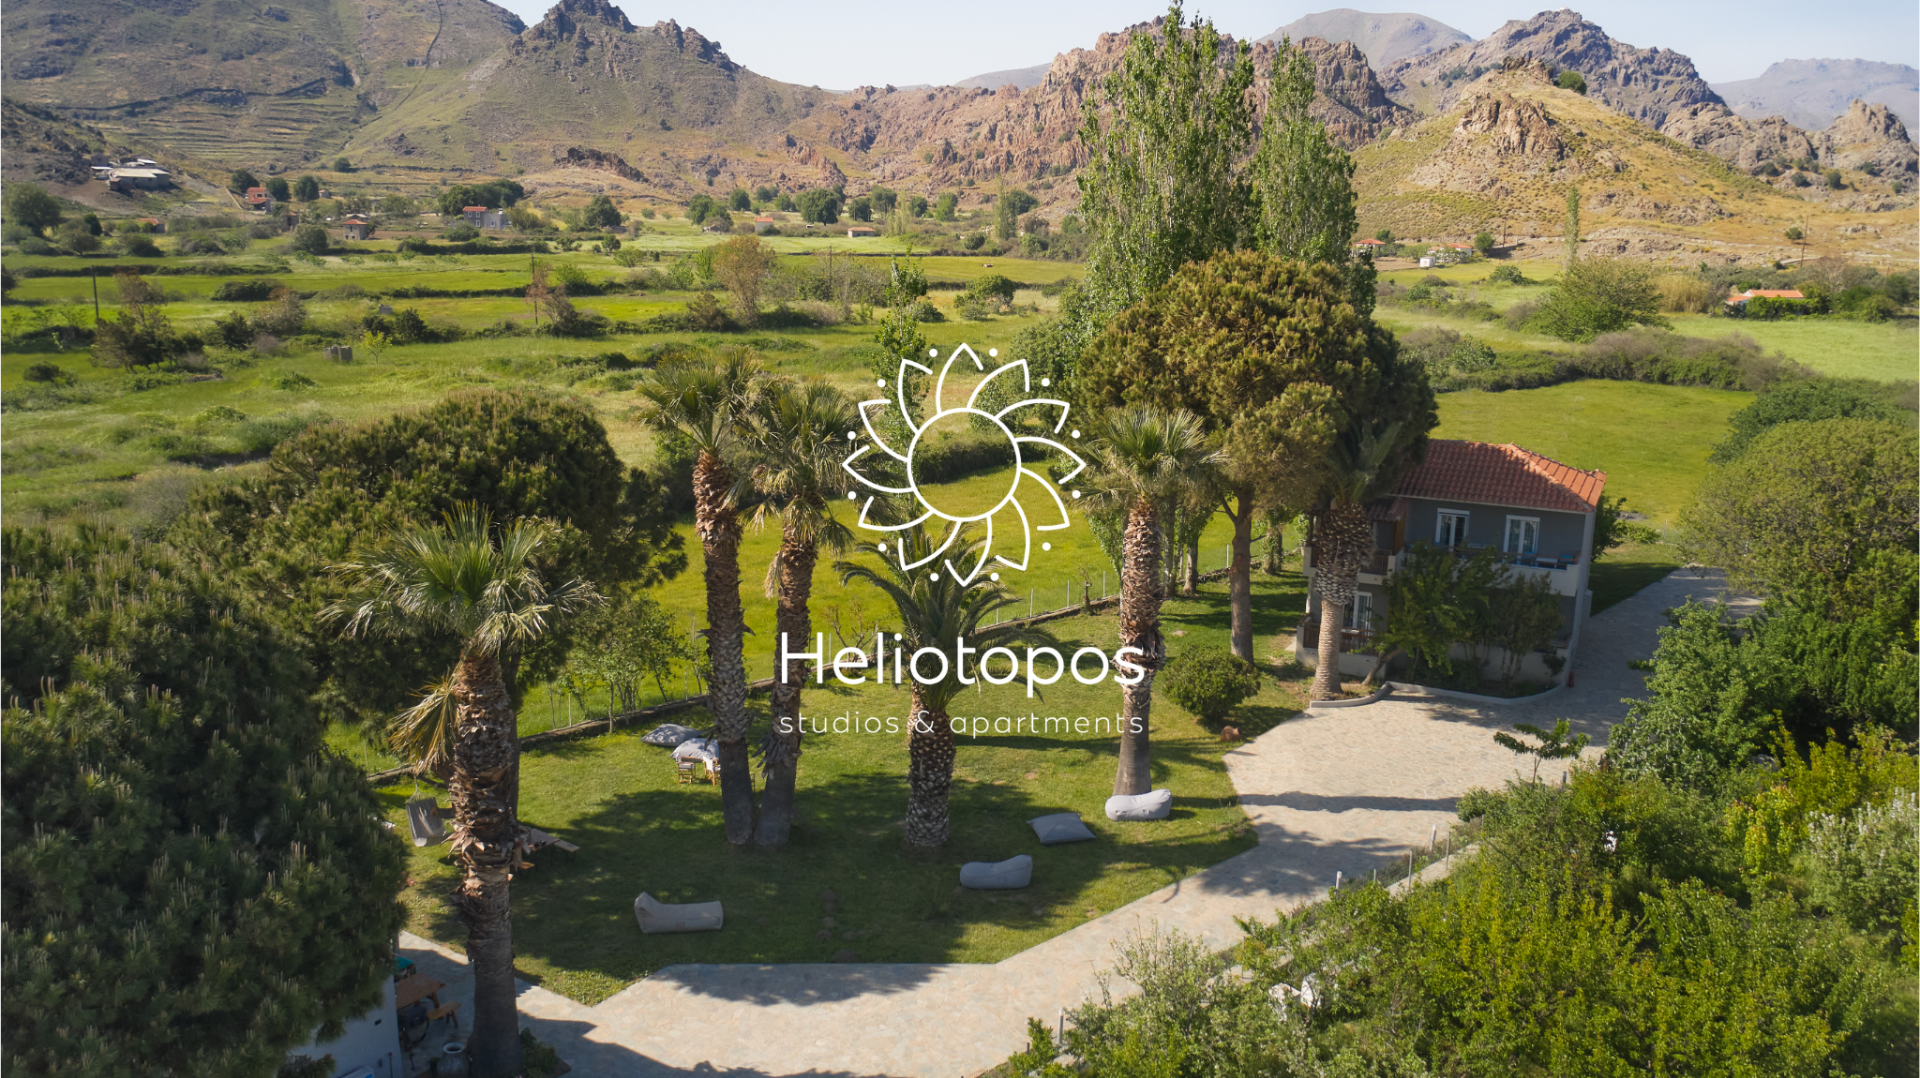 Heliotopos Studios & Apartments